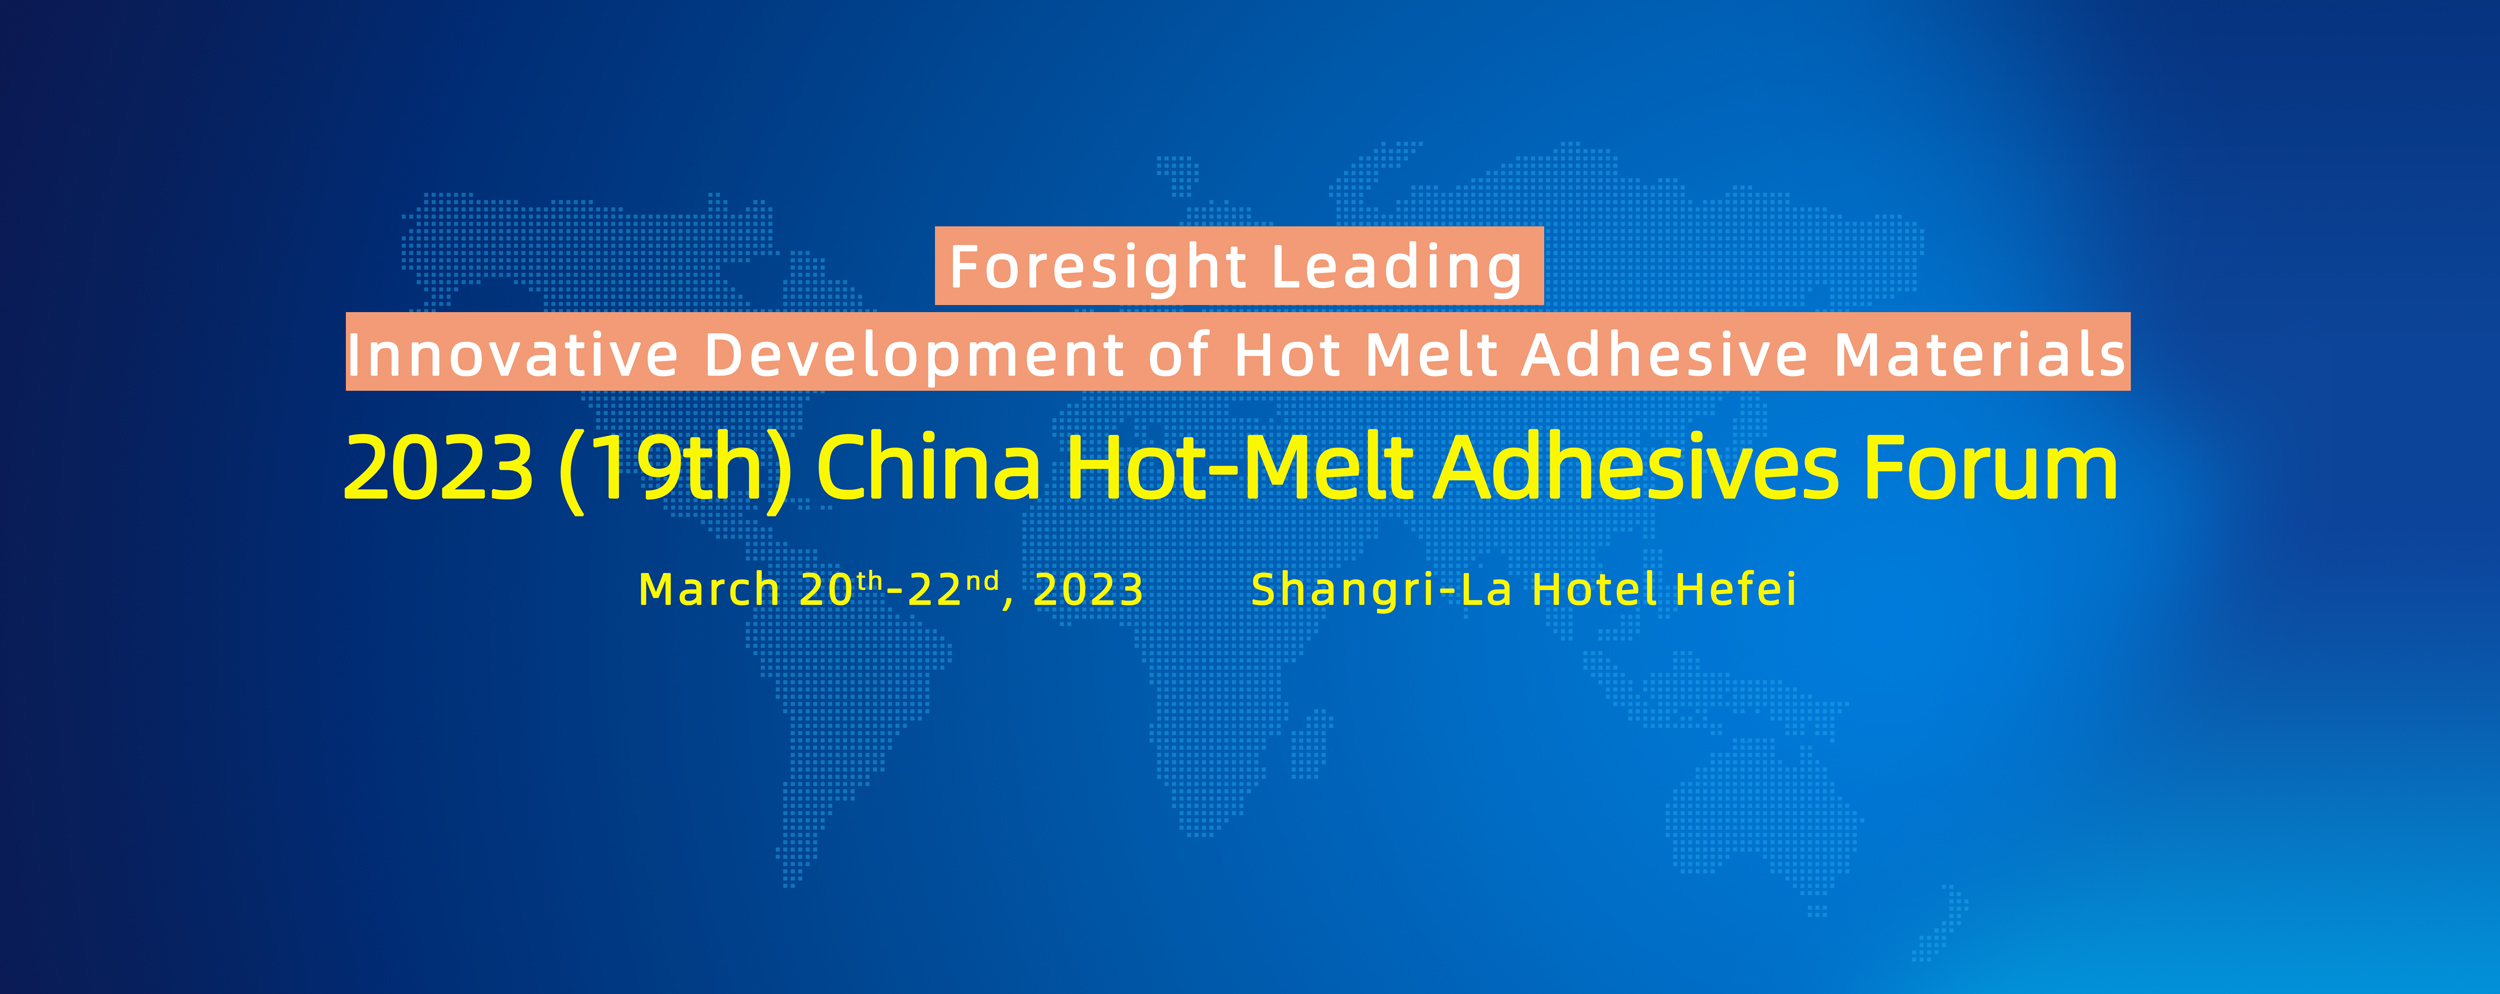 2023 (19th) China Hot-Melt Adhesives Forum 